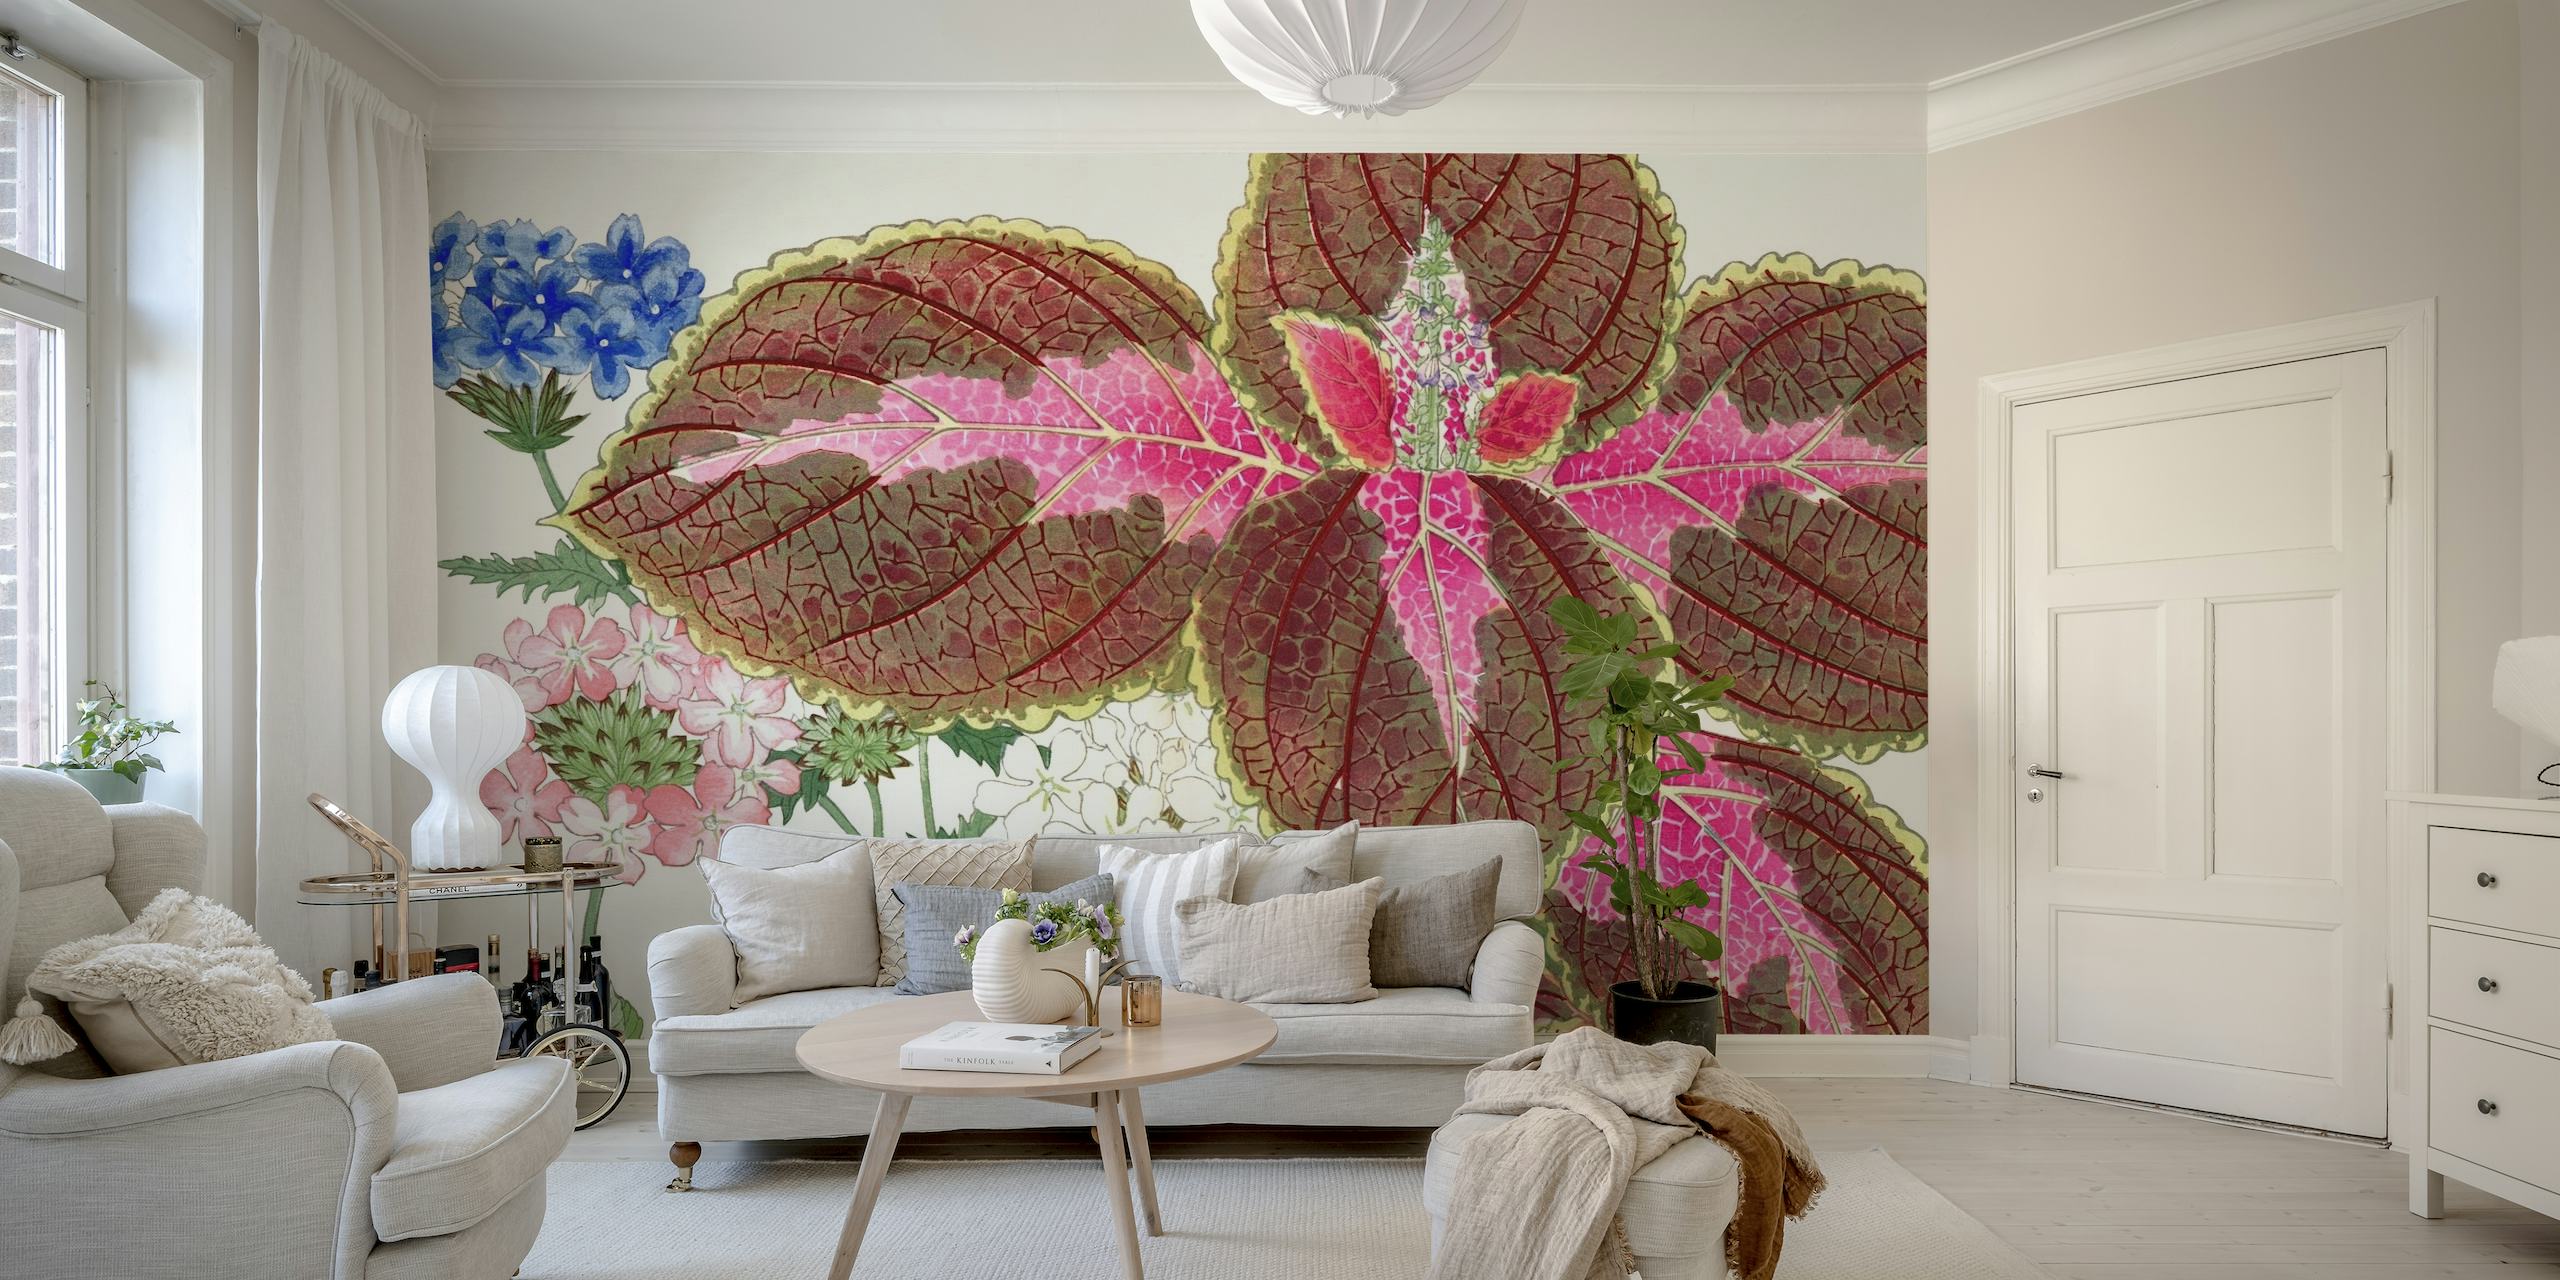 Teksturowana ilustracja przedstawiająca ogród inspirowany kuchnią azjatycką z pastelowymi kwiatami i liśćmi.